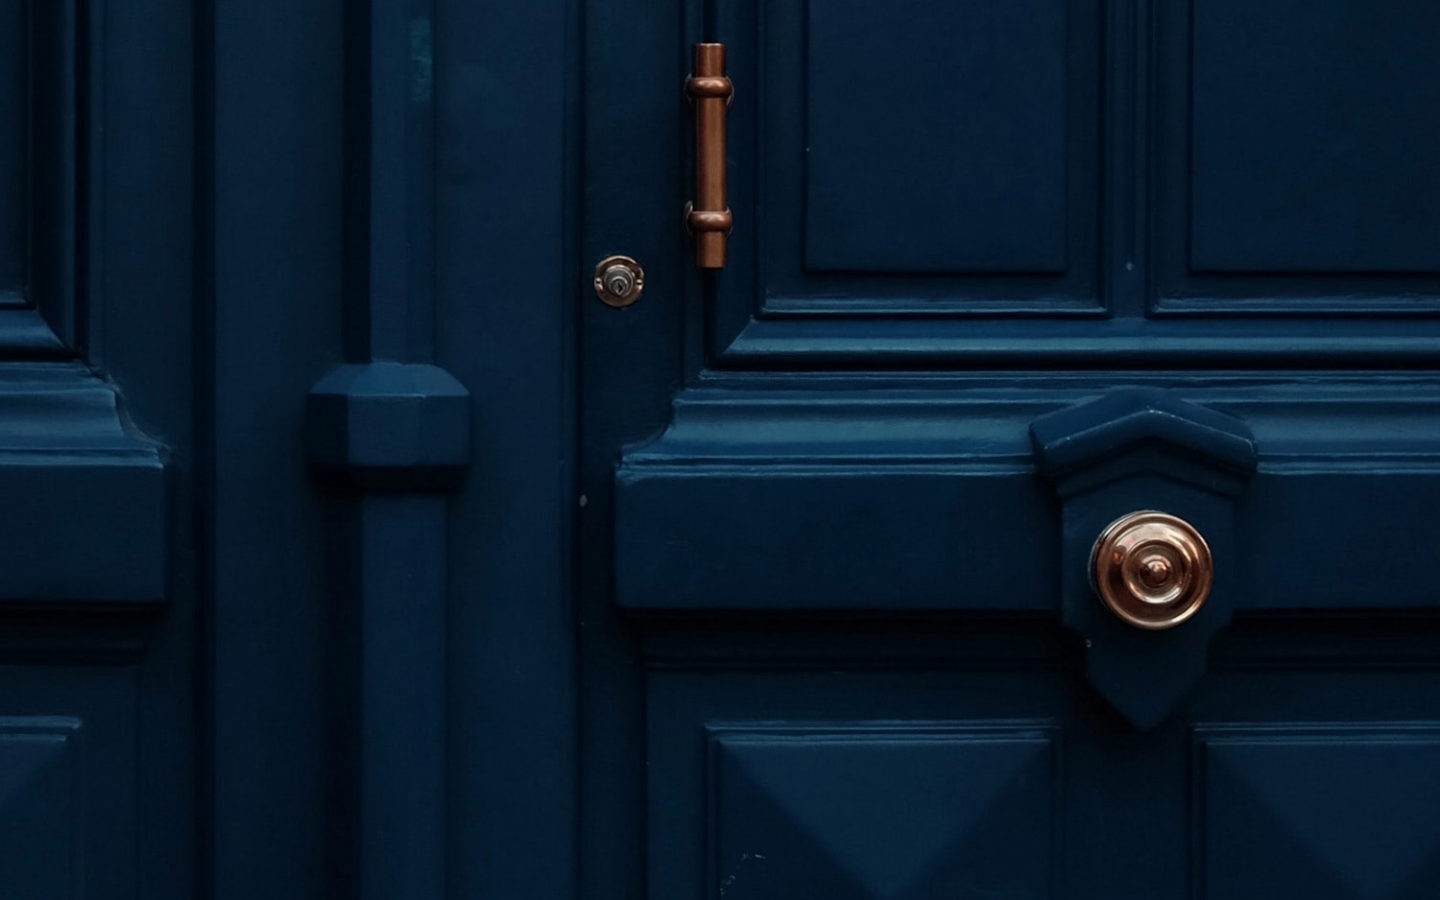 deep blue wooden door with copper accents